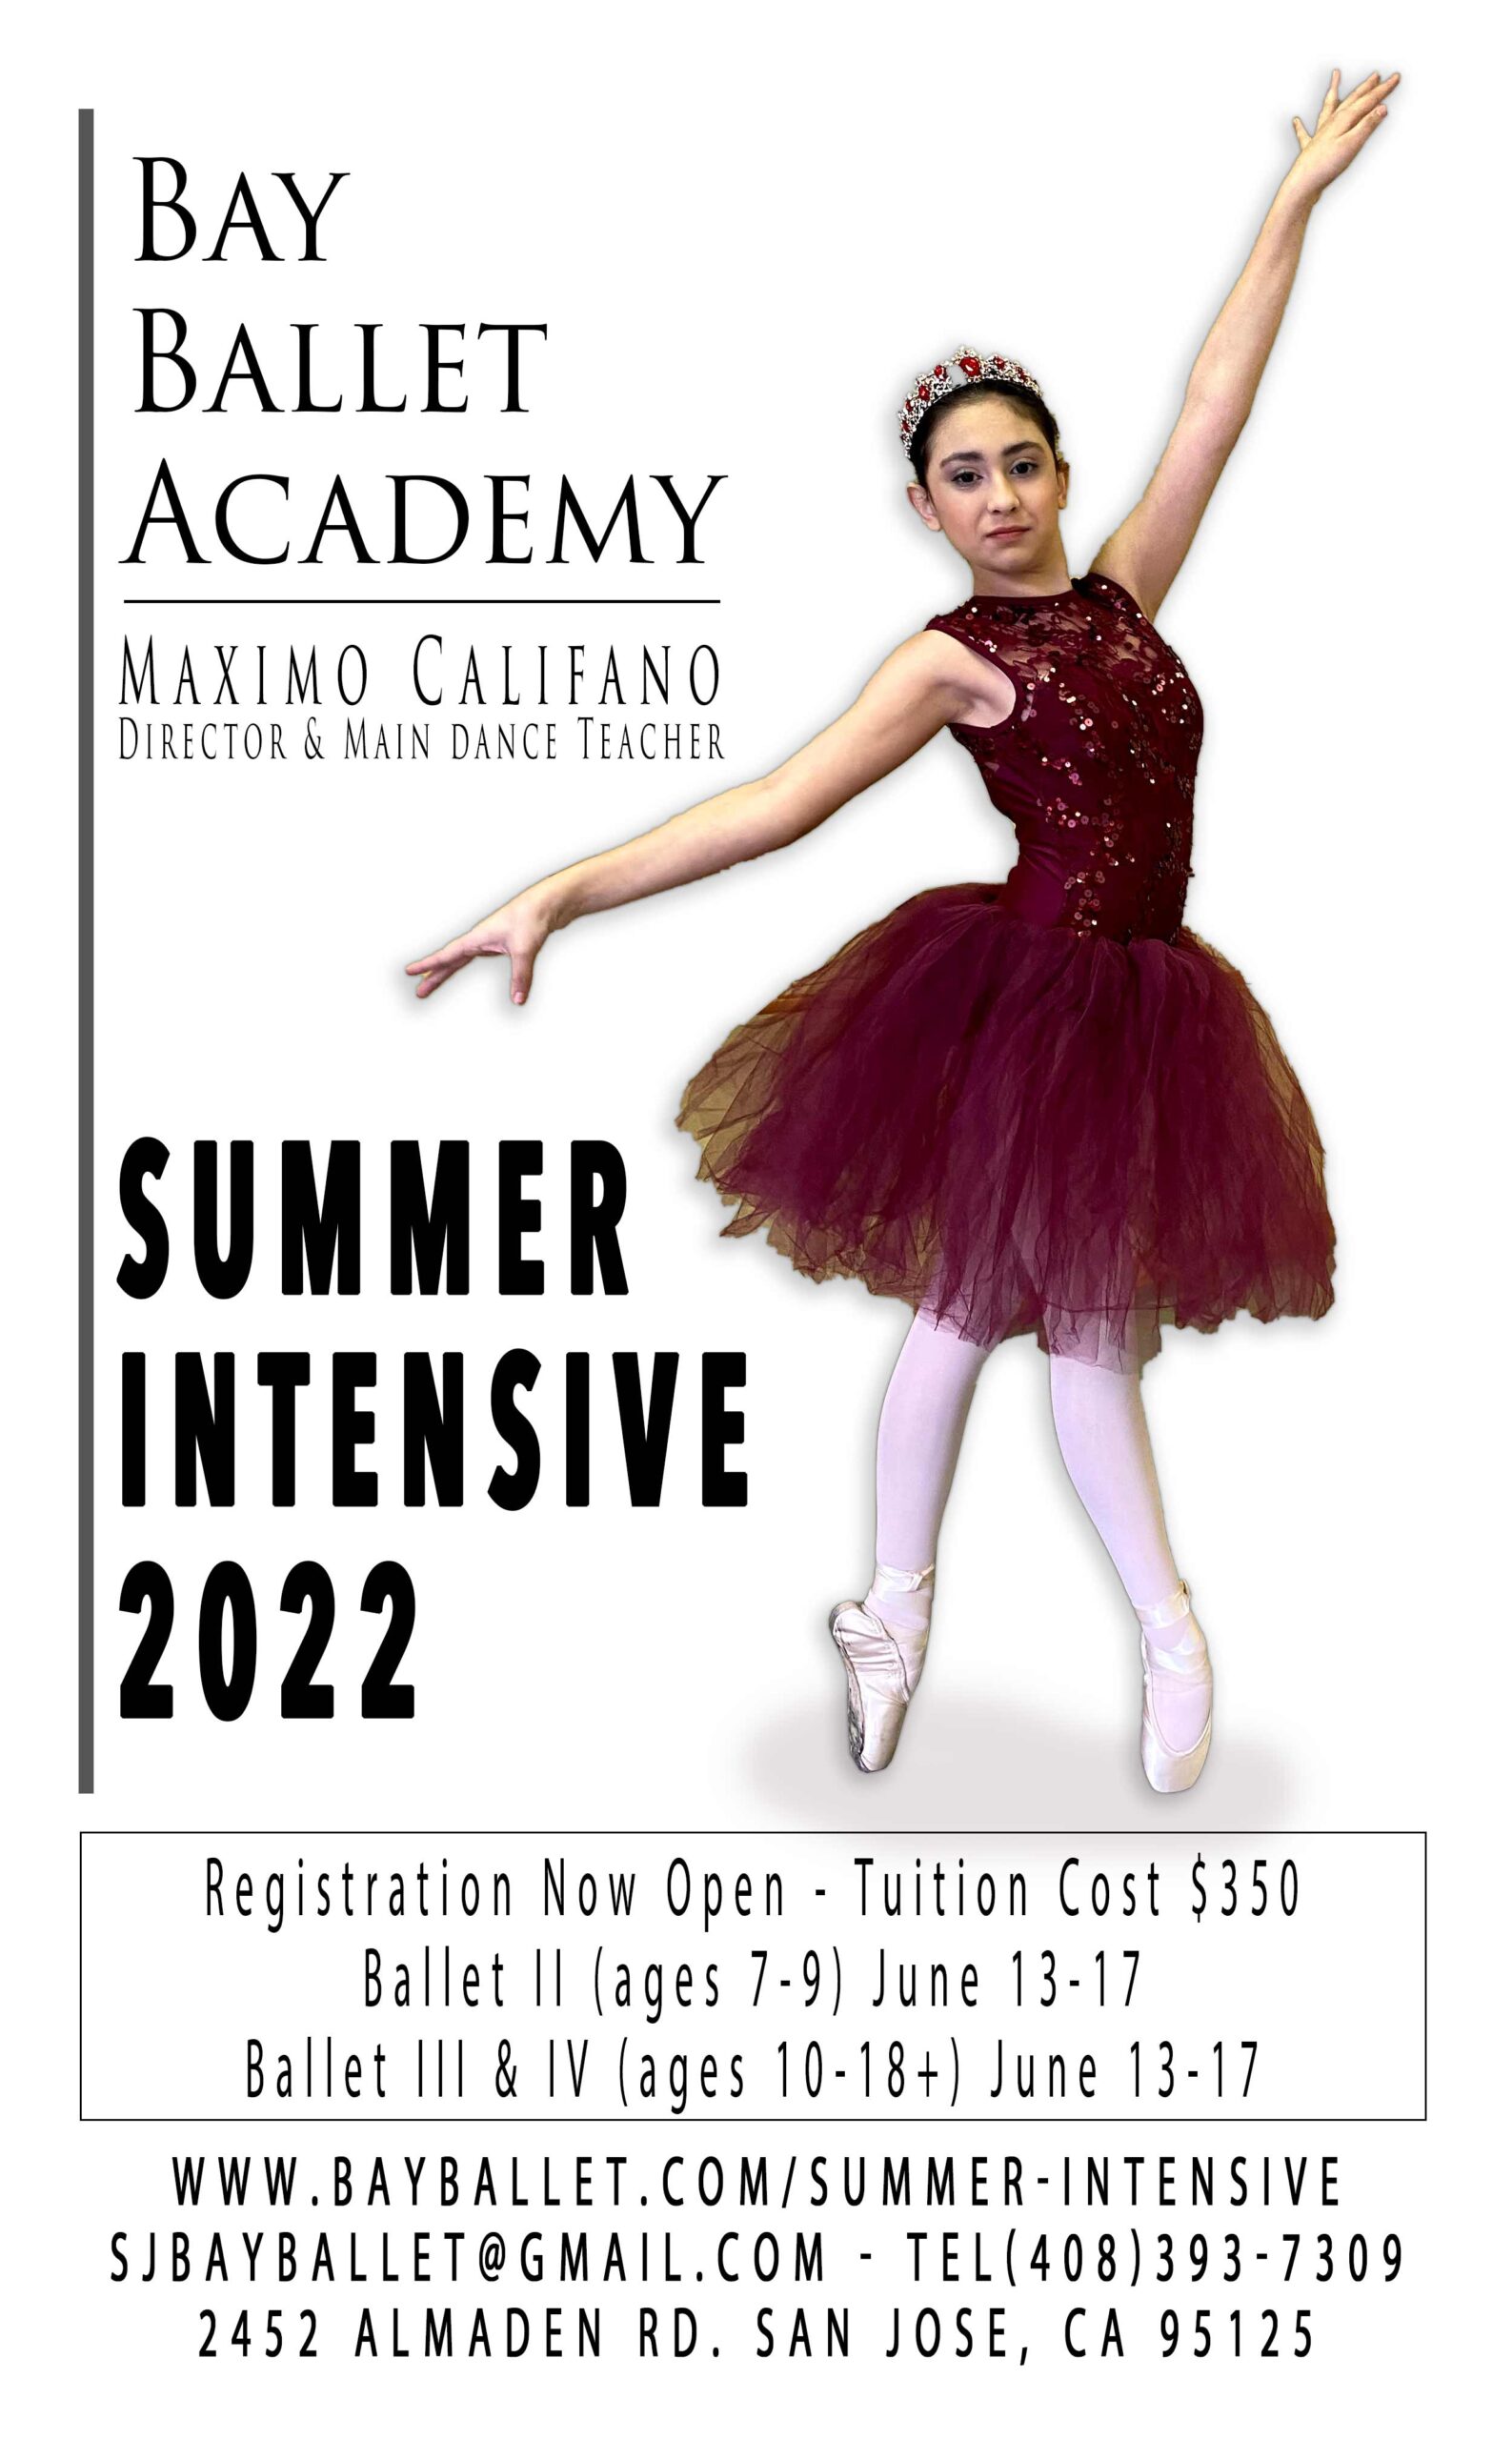 Bay Ballet Academy Summer Intensive 2022